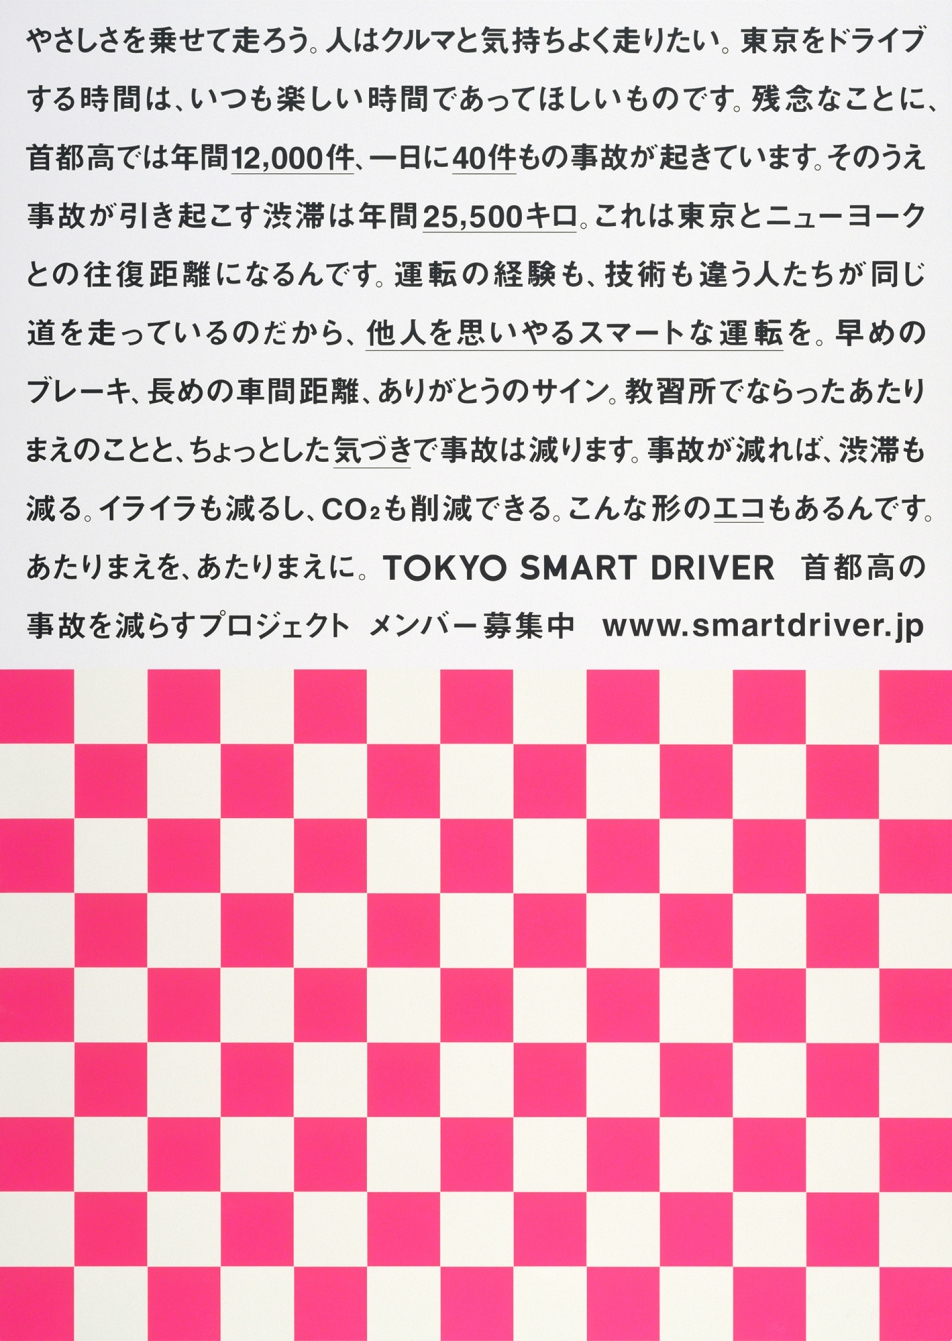 東京スマートドライバーキャンペーン | good design company